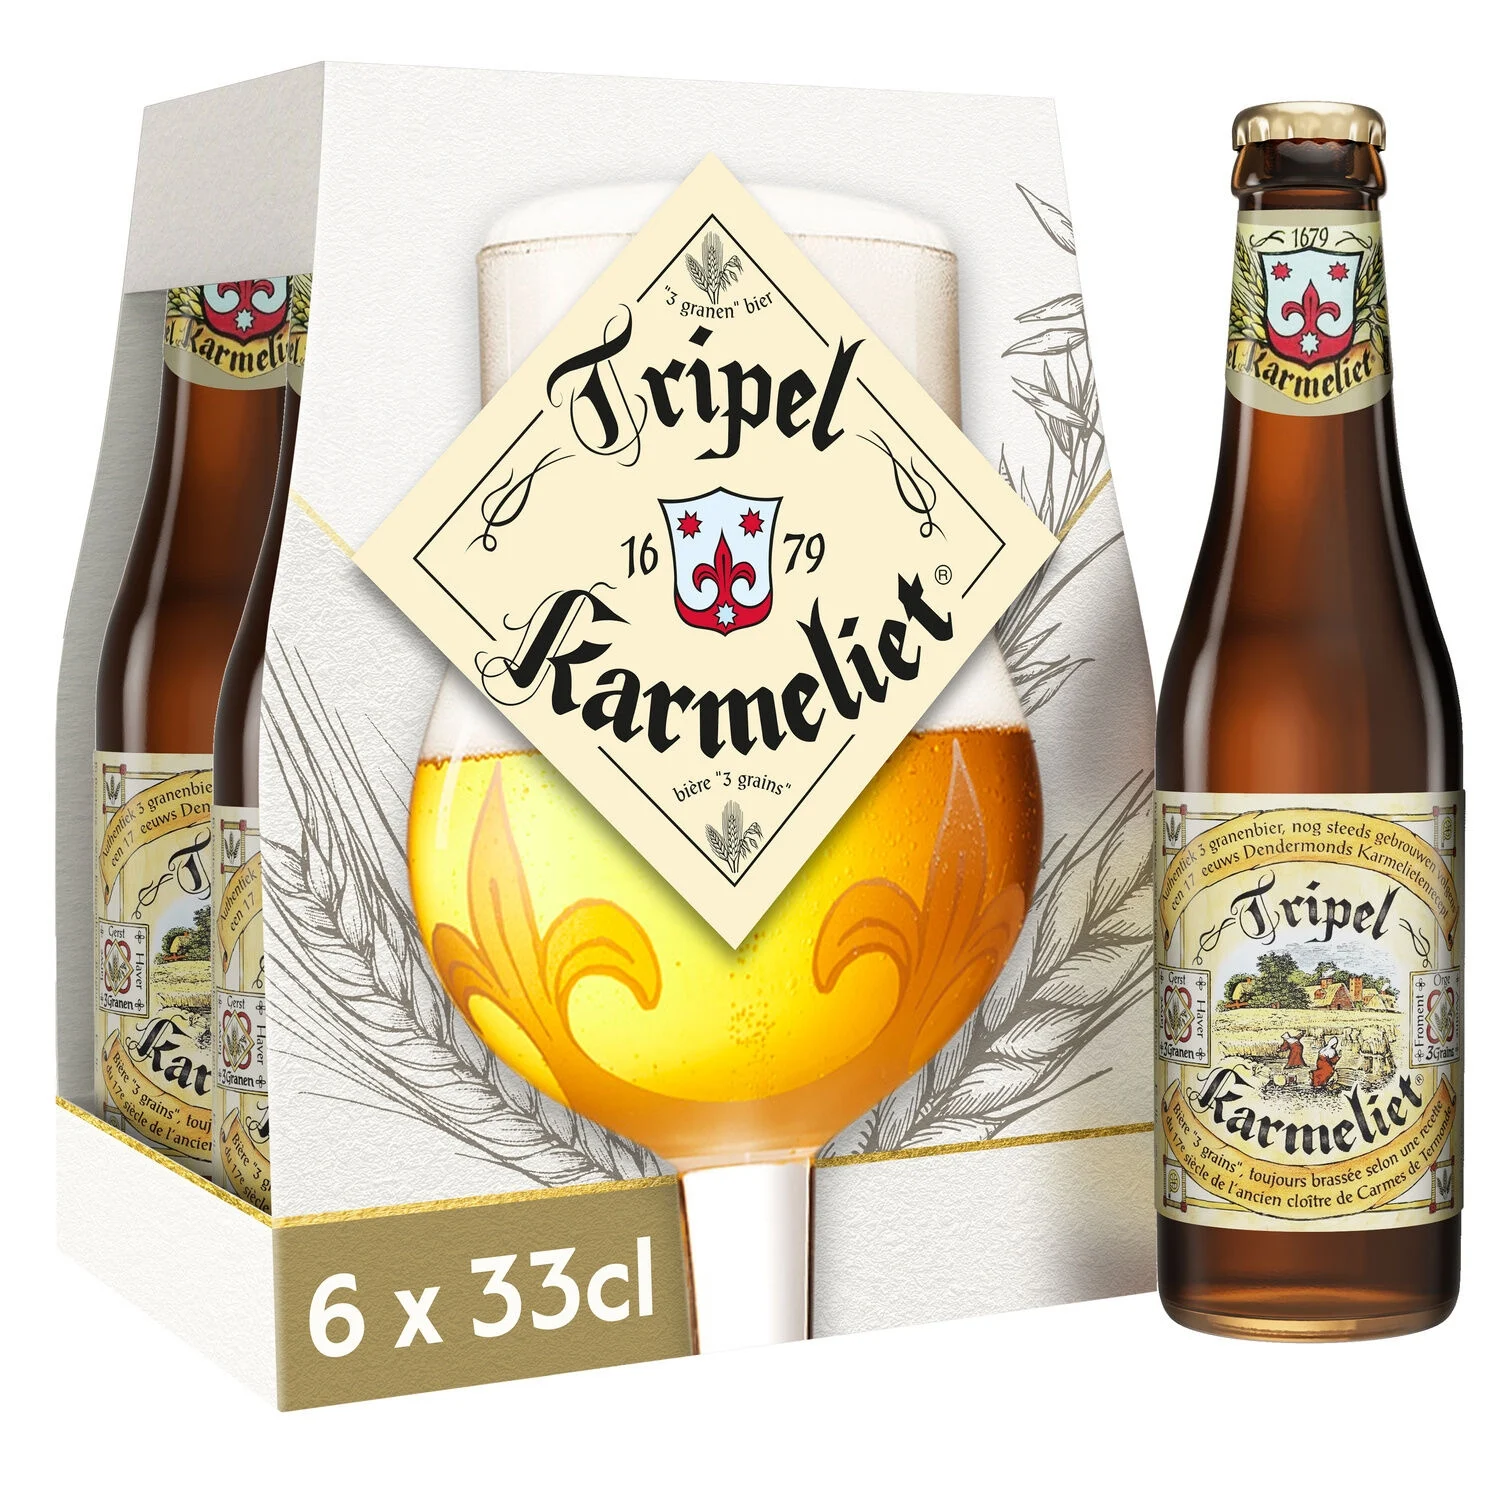 Bia ba màu vàng, 8,4°, 6x33cl - KARMELIET